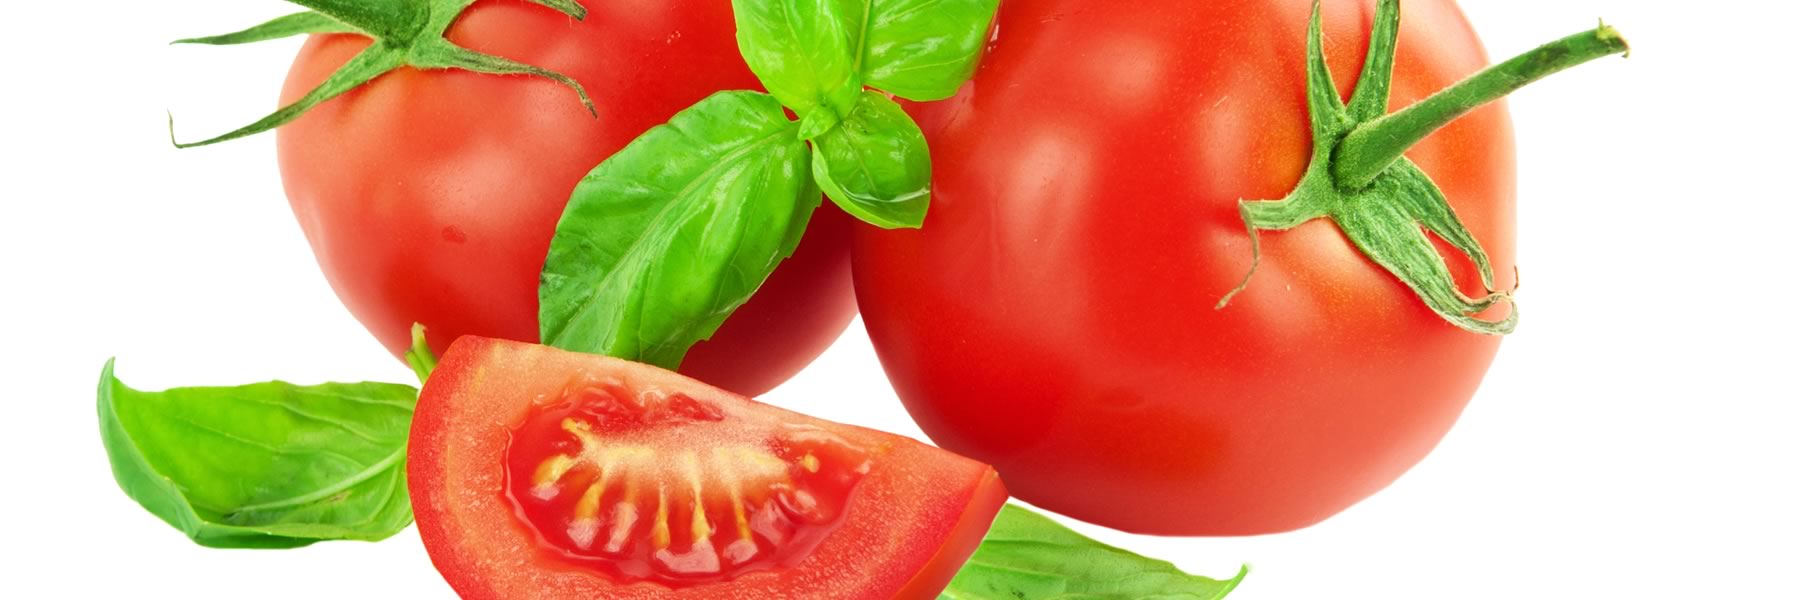 Mountain Magic tomato has exceptional sweet flavour.